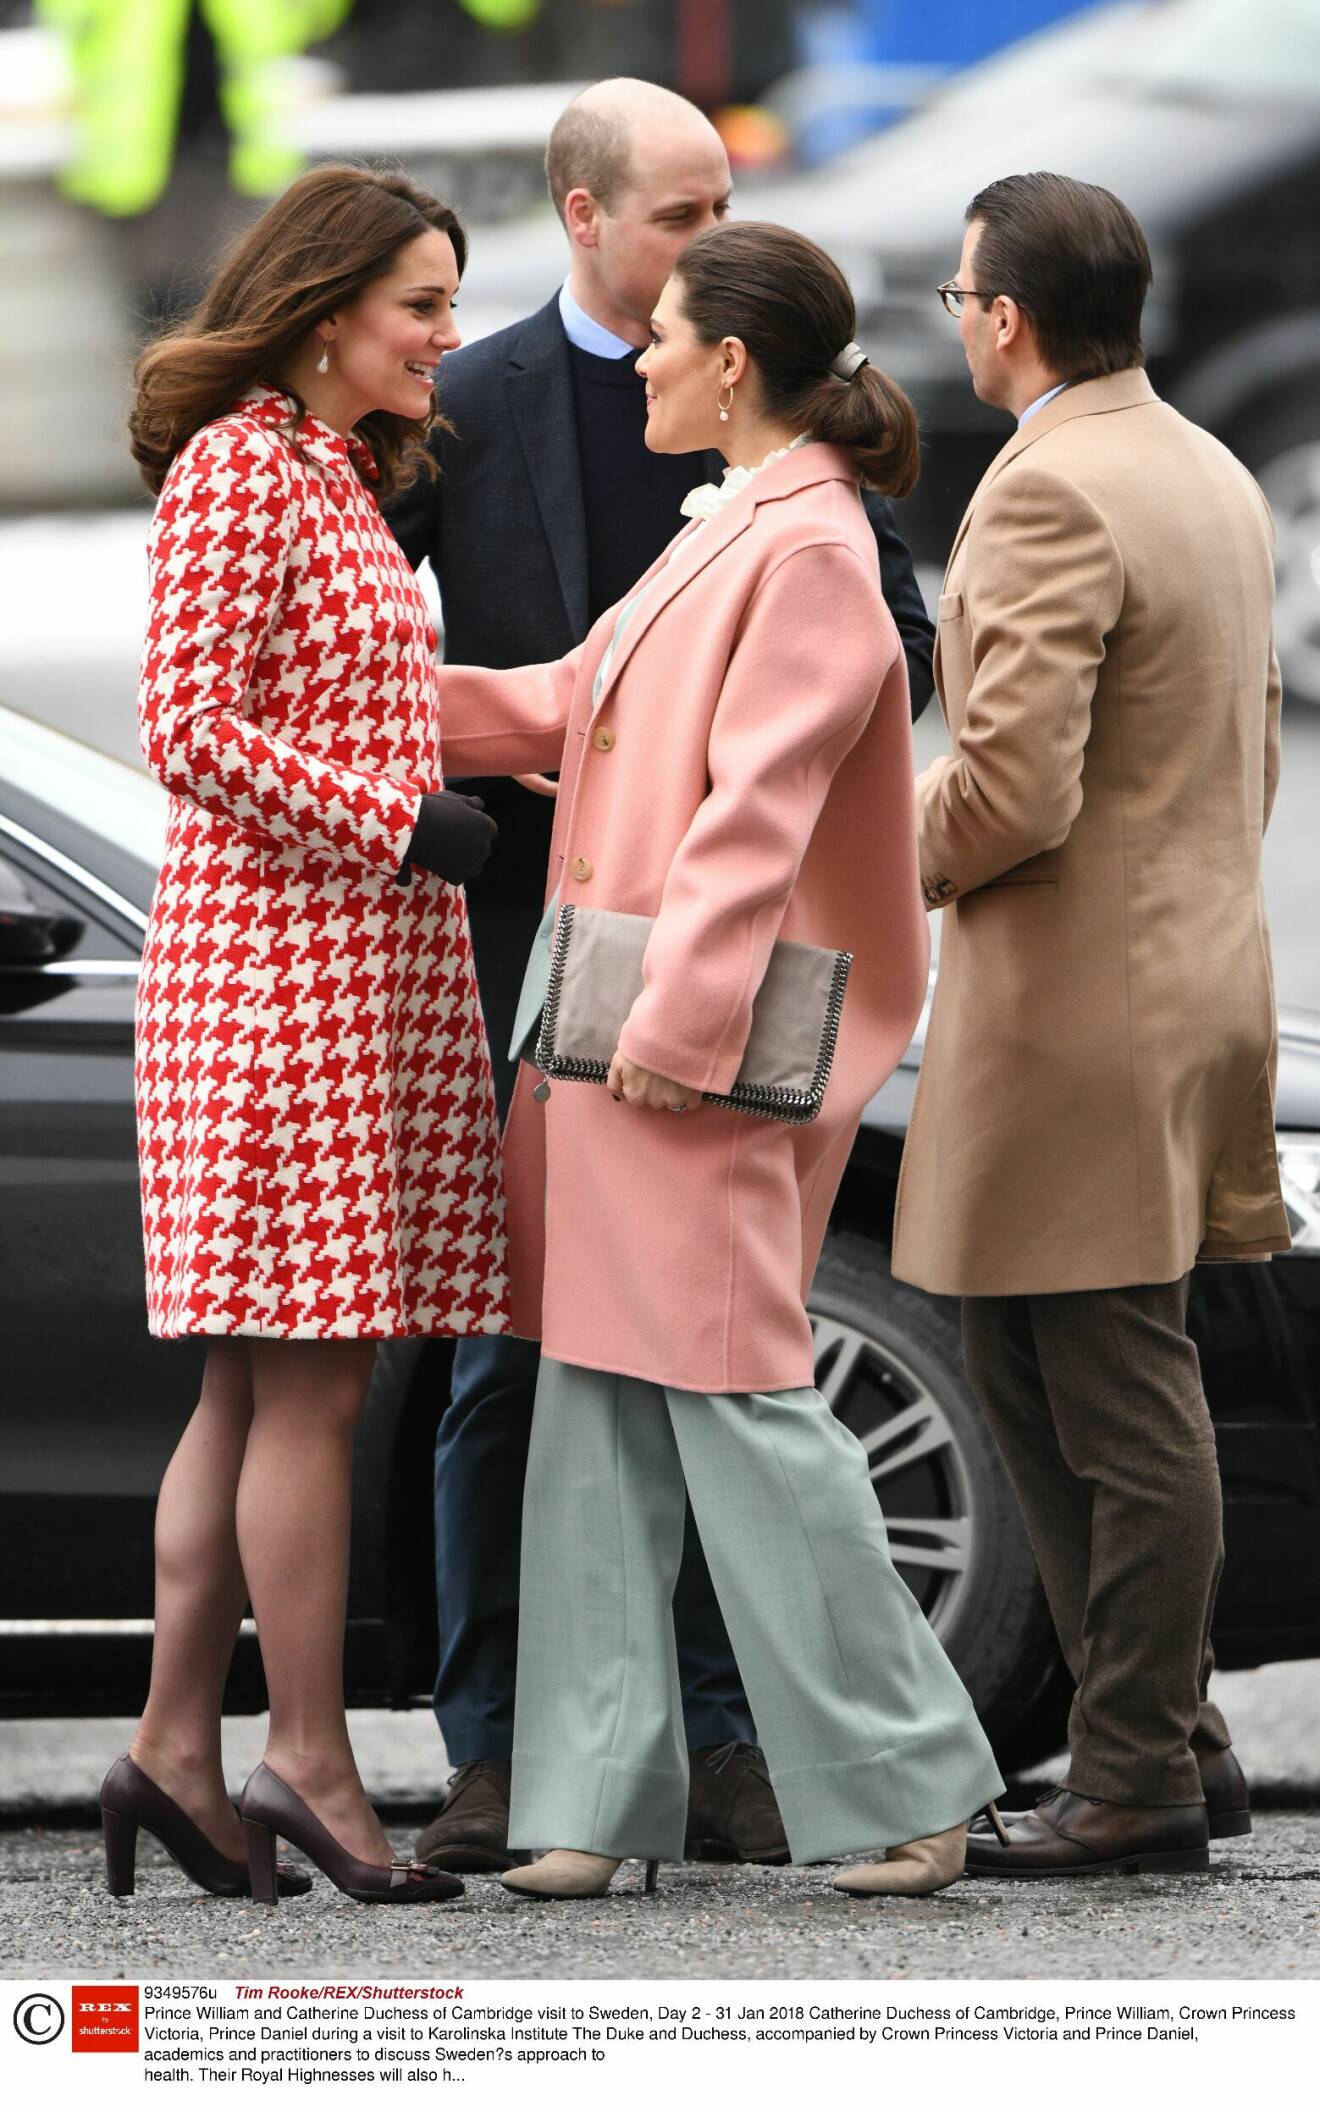 Kronprinsessan Victoria och prinsessan Kate pratar med varandra, prins William och prins Daniel i bakgrunden